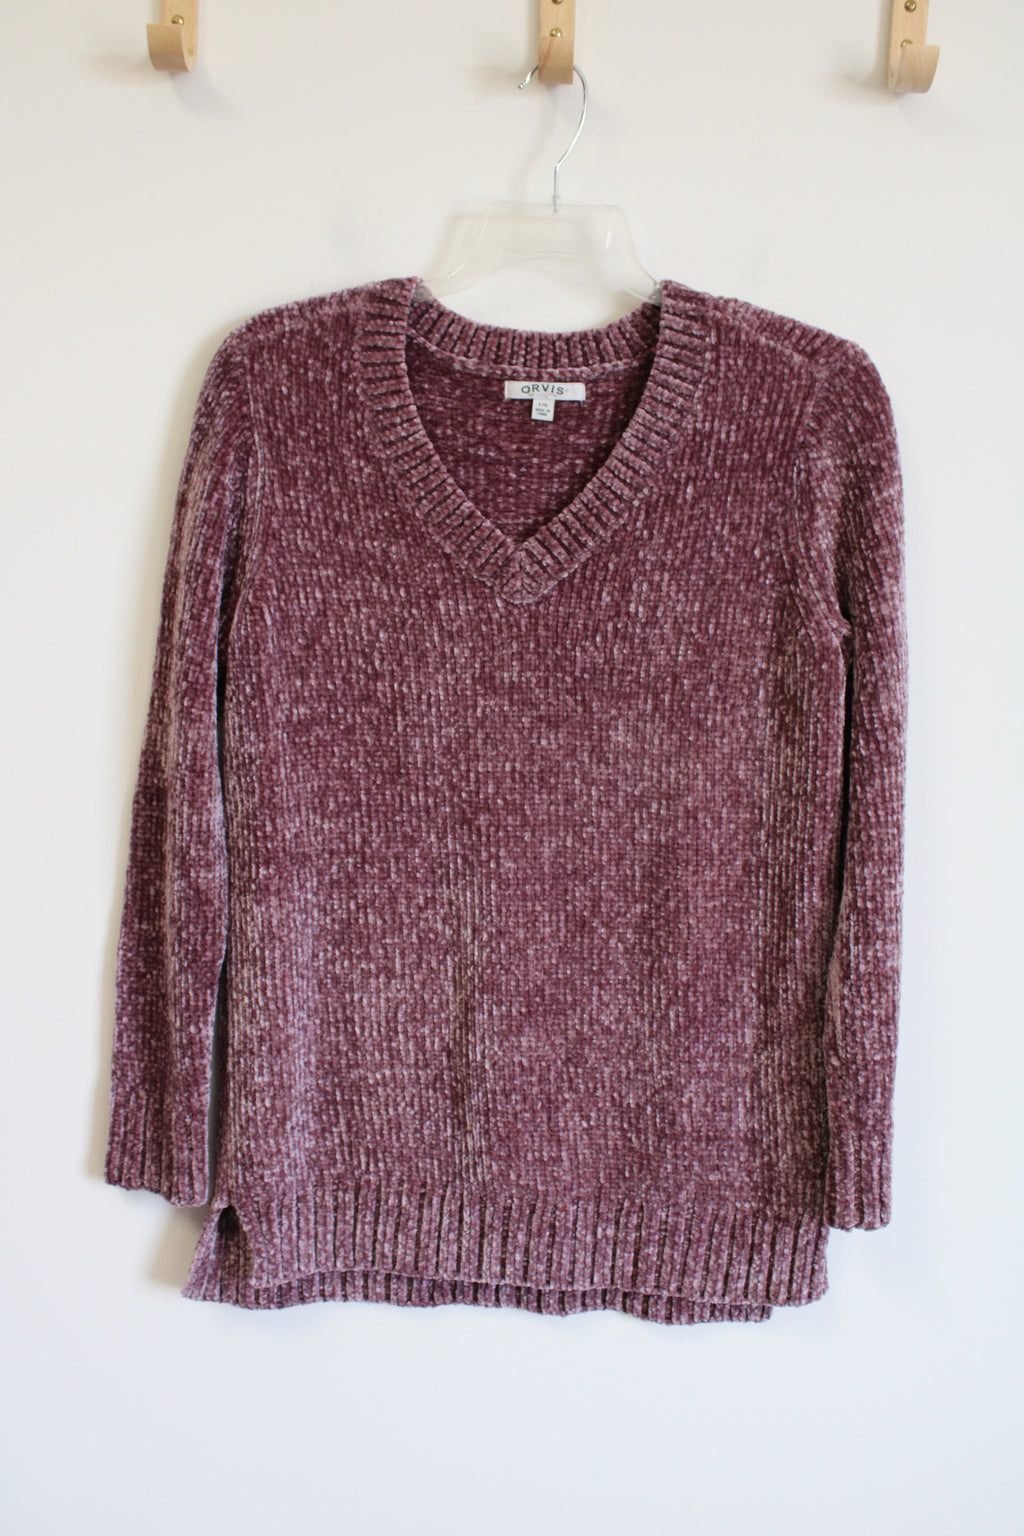 Orvis Dusty Pink Knit Sweater | L